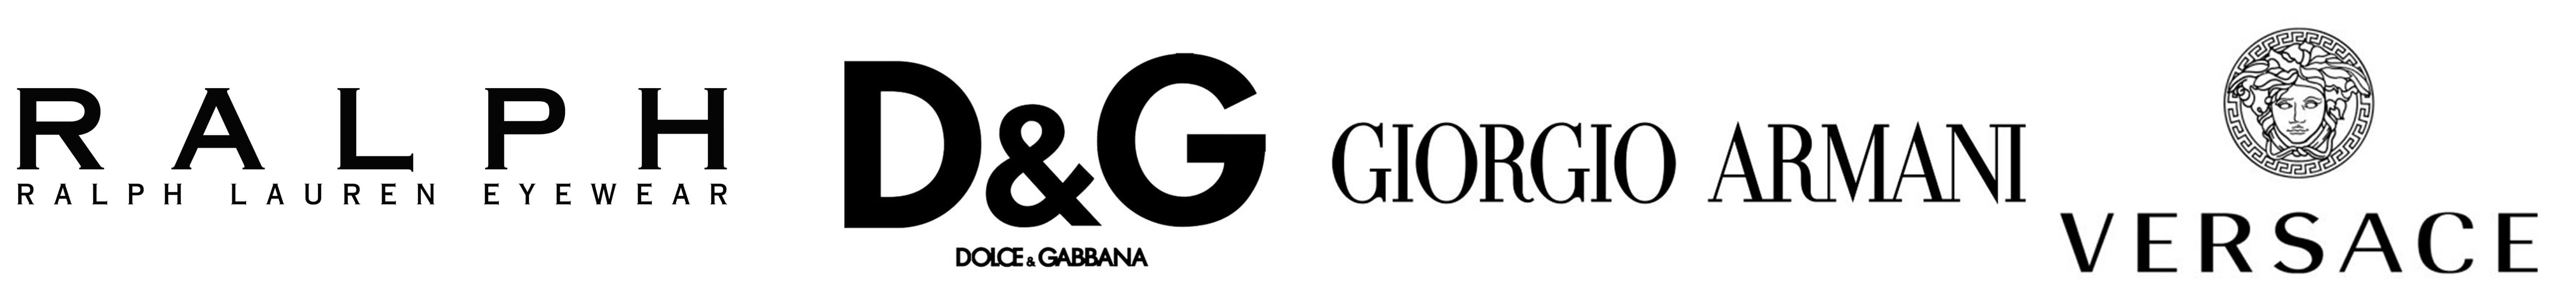 banniere ralph D&G Giorgio Armani Versace